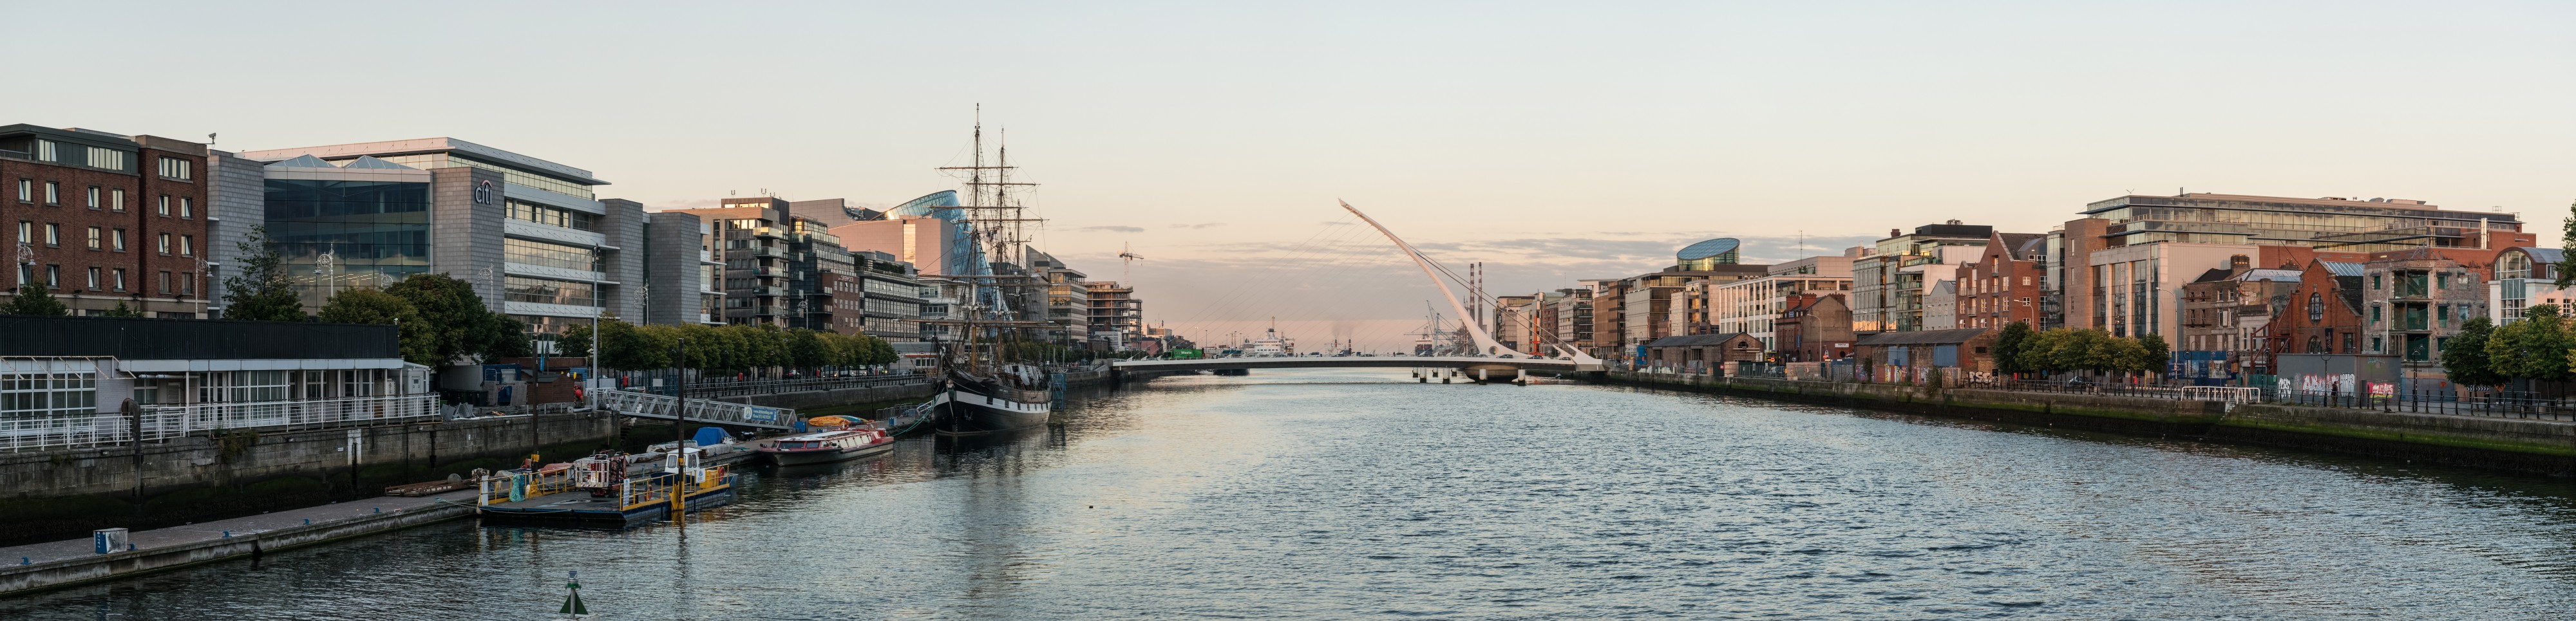 Panoramic View of River Liffey and Samuel Beckett Bridge, Dublin 20150807 1